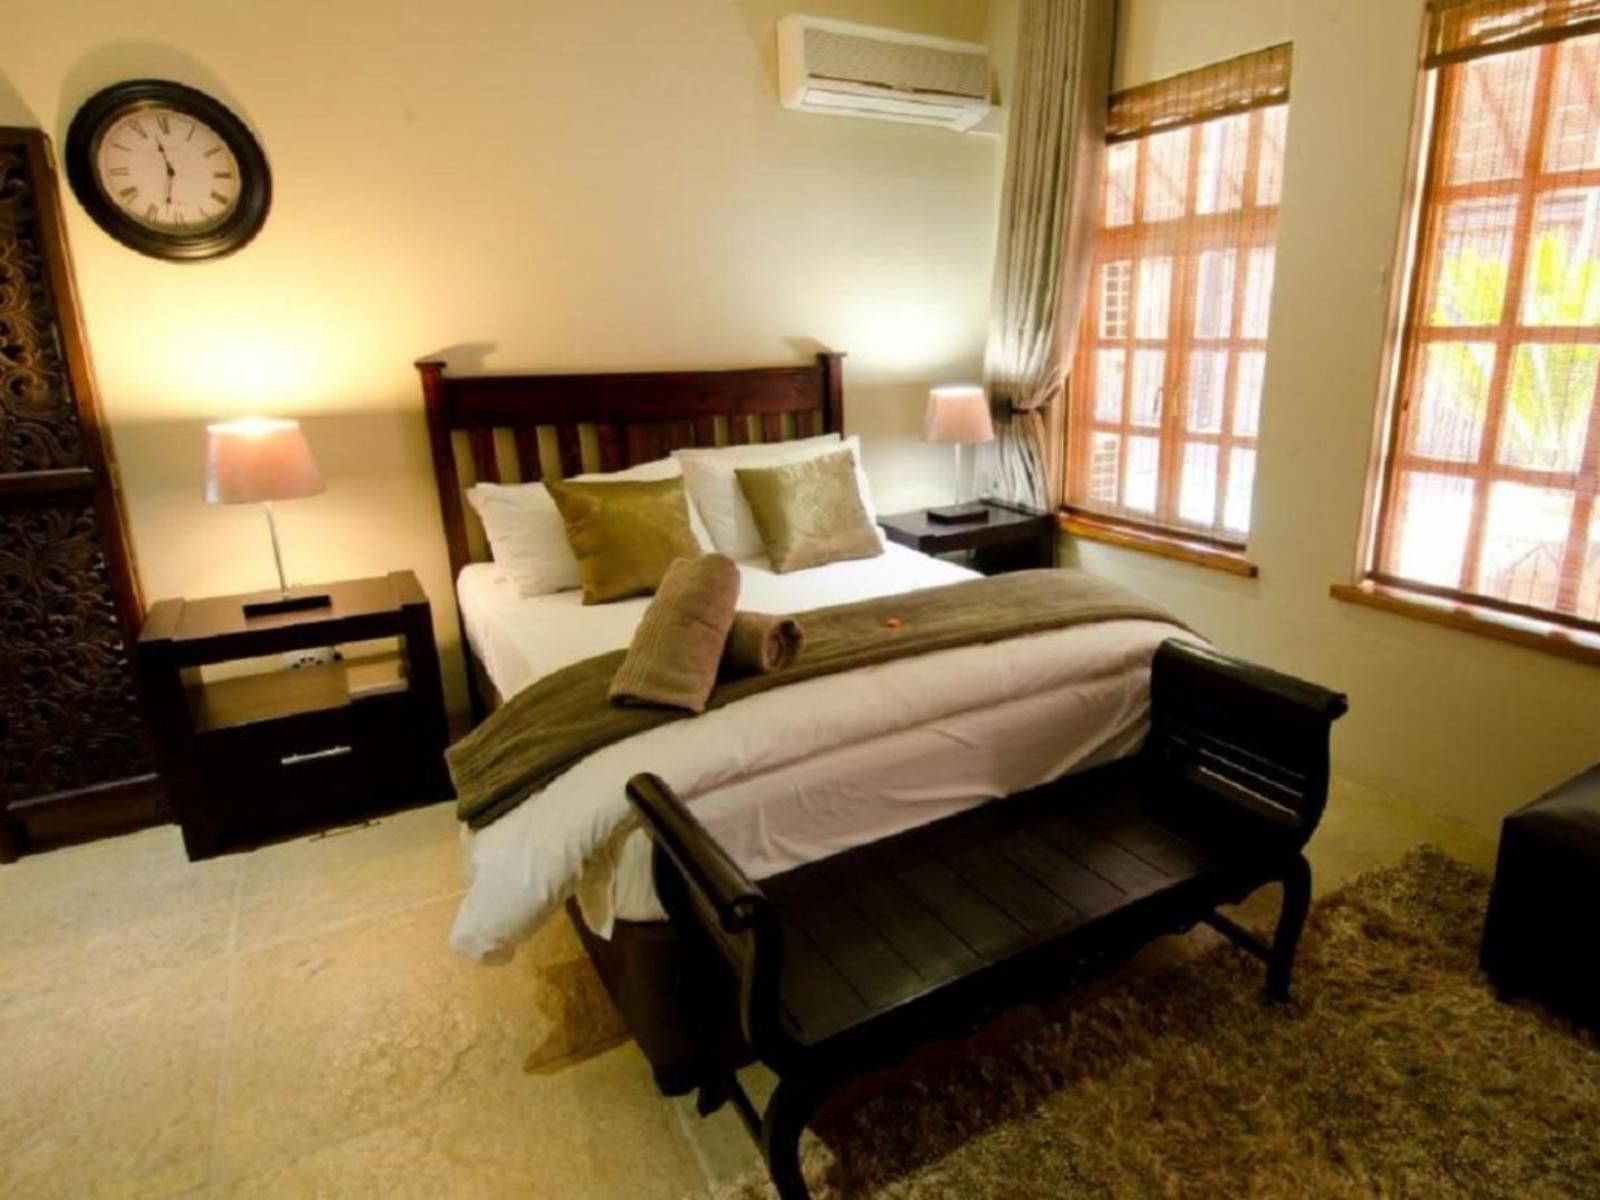 139 On Munnik Guest House Makhado Louis Trichardt Limpopo Province South Africa Bedroom